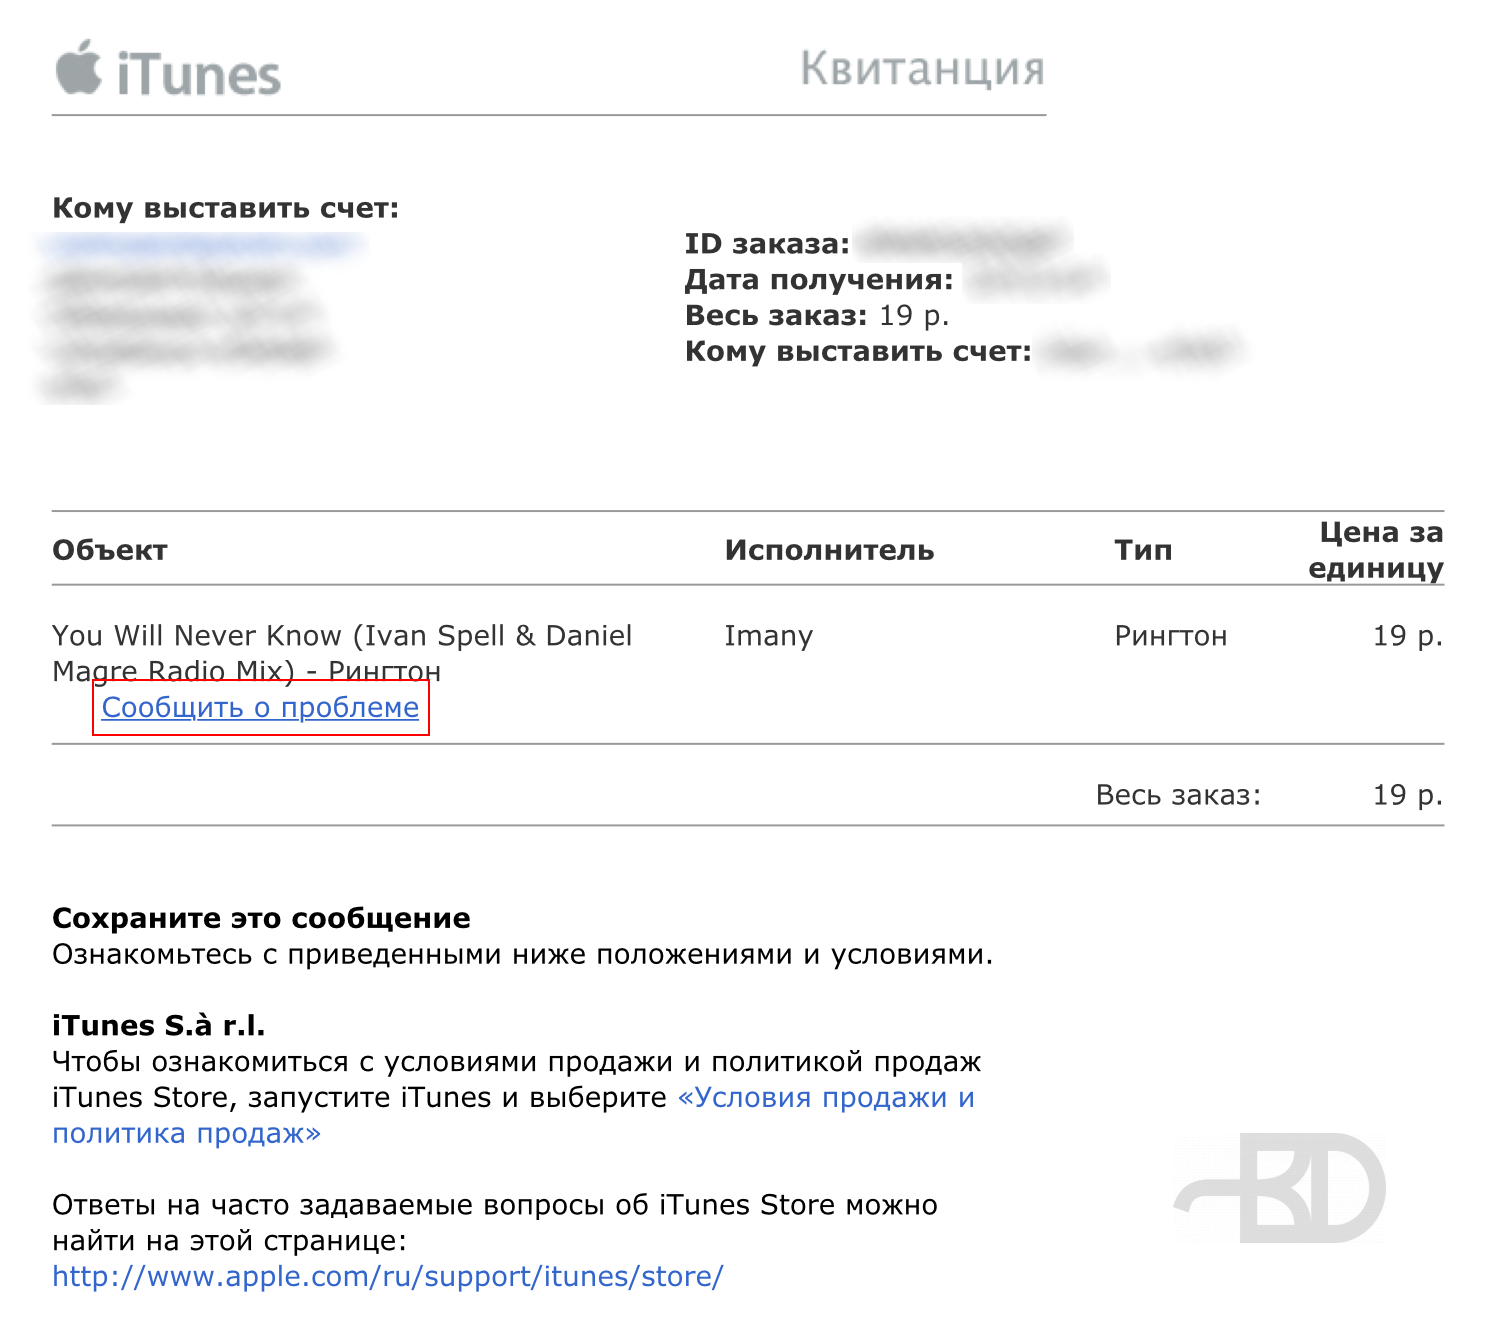 iTunes Store: Квитанция